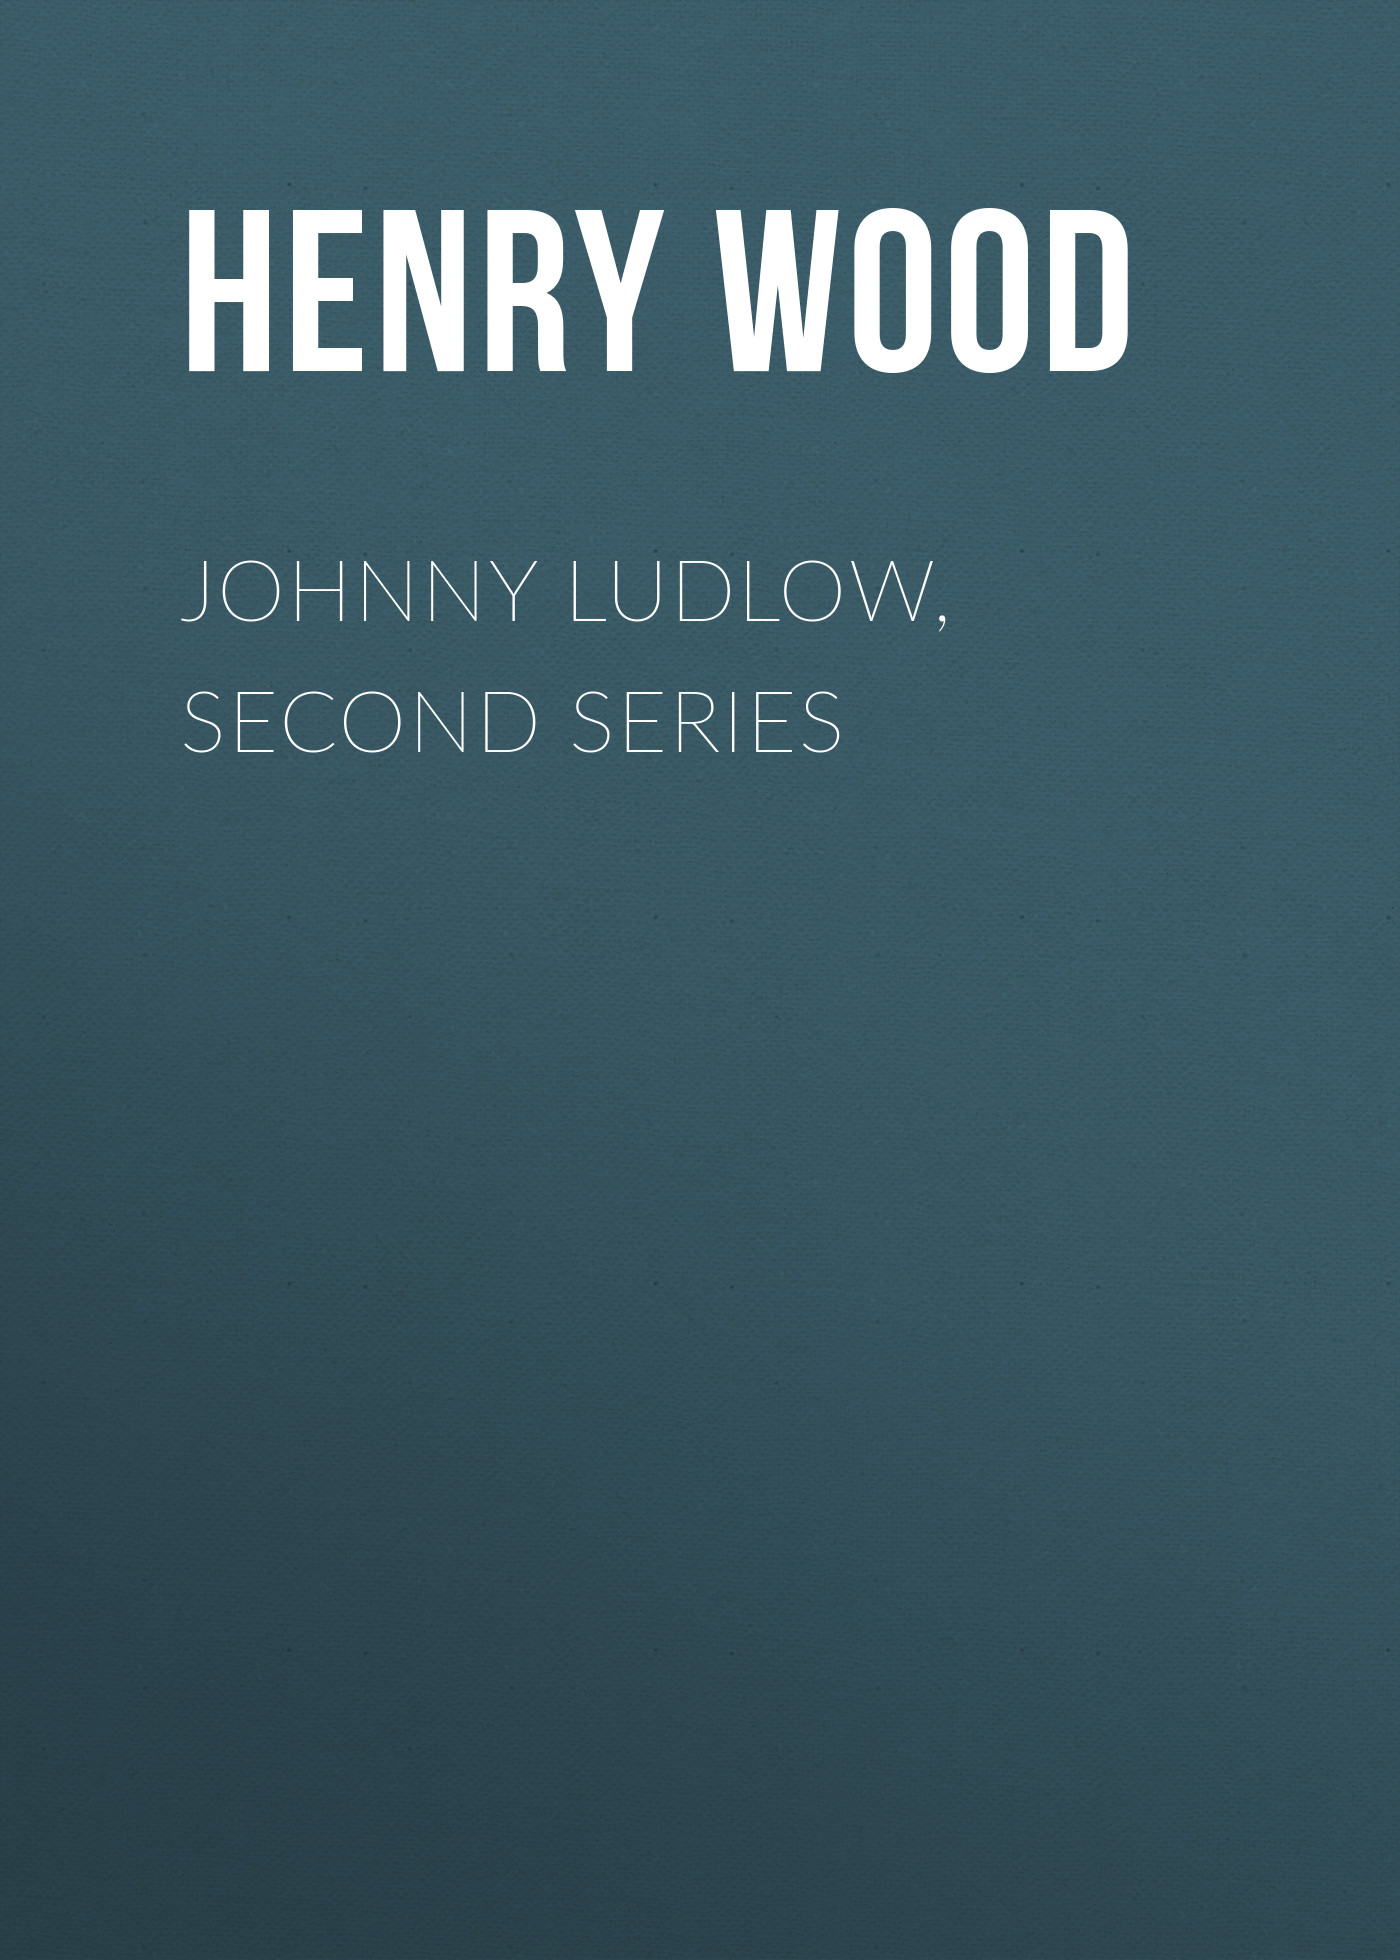 Книга Johnny Ludlow, Second Series из серии , созданная Henry Wood, может относится к жанру Зарубежная классика, Литература 19 века, Зарубежная старинная литература. Стоимость электронной книги Johnny Ludlow, Second Series с идентификатором 35007537 составляет 0 руб.